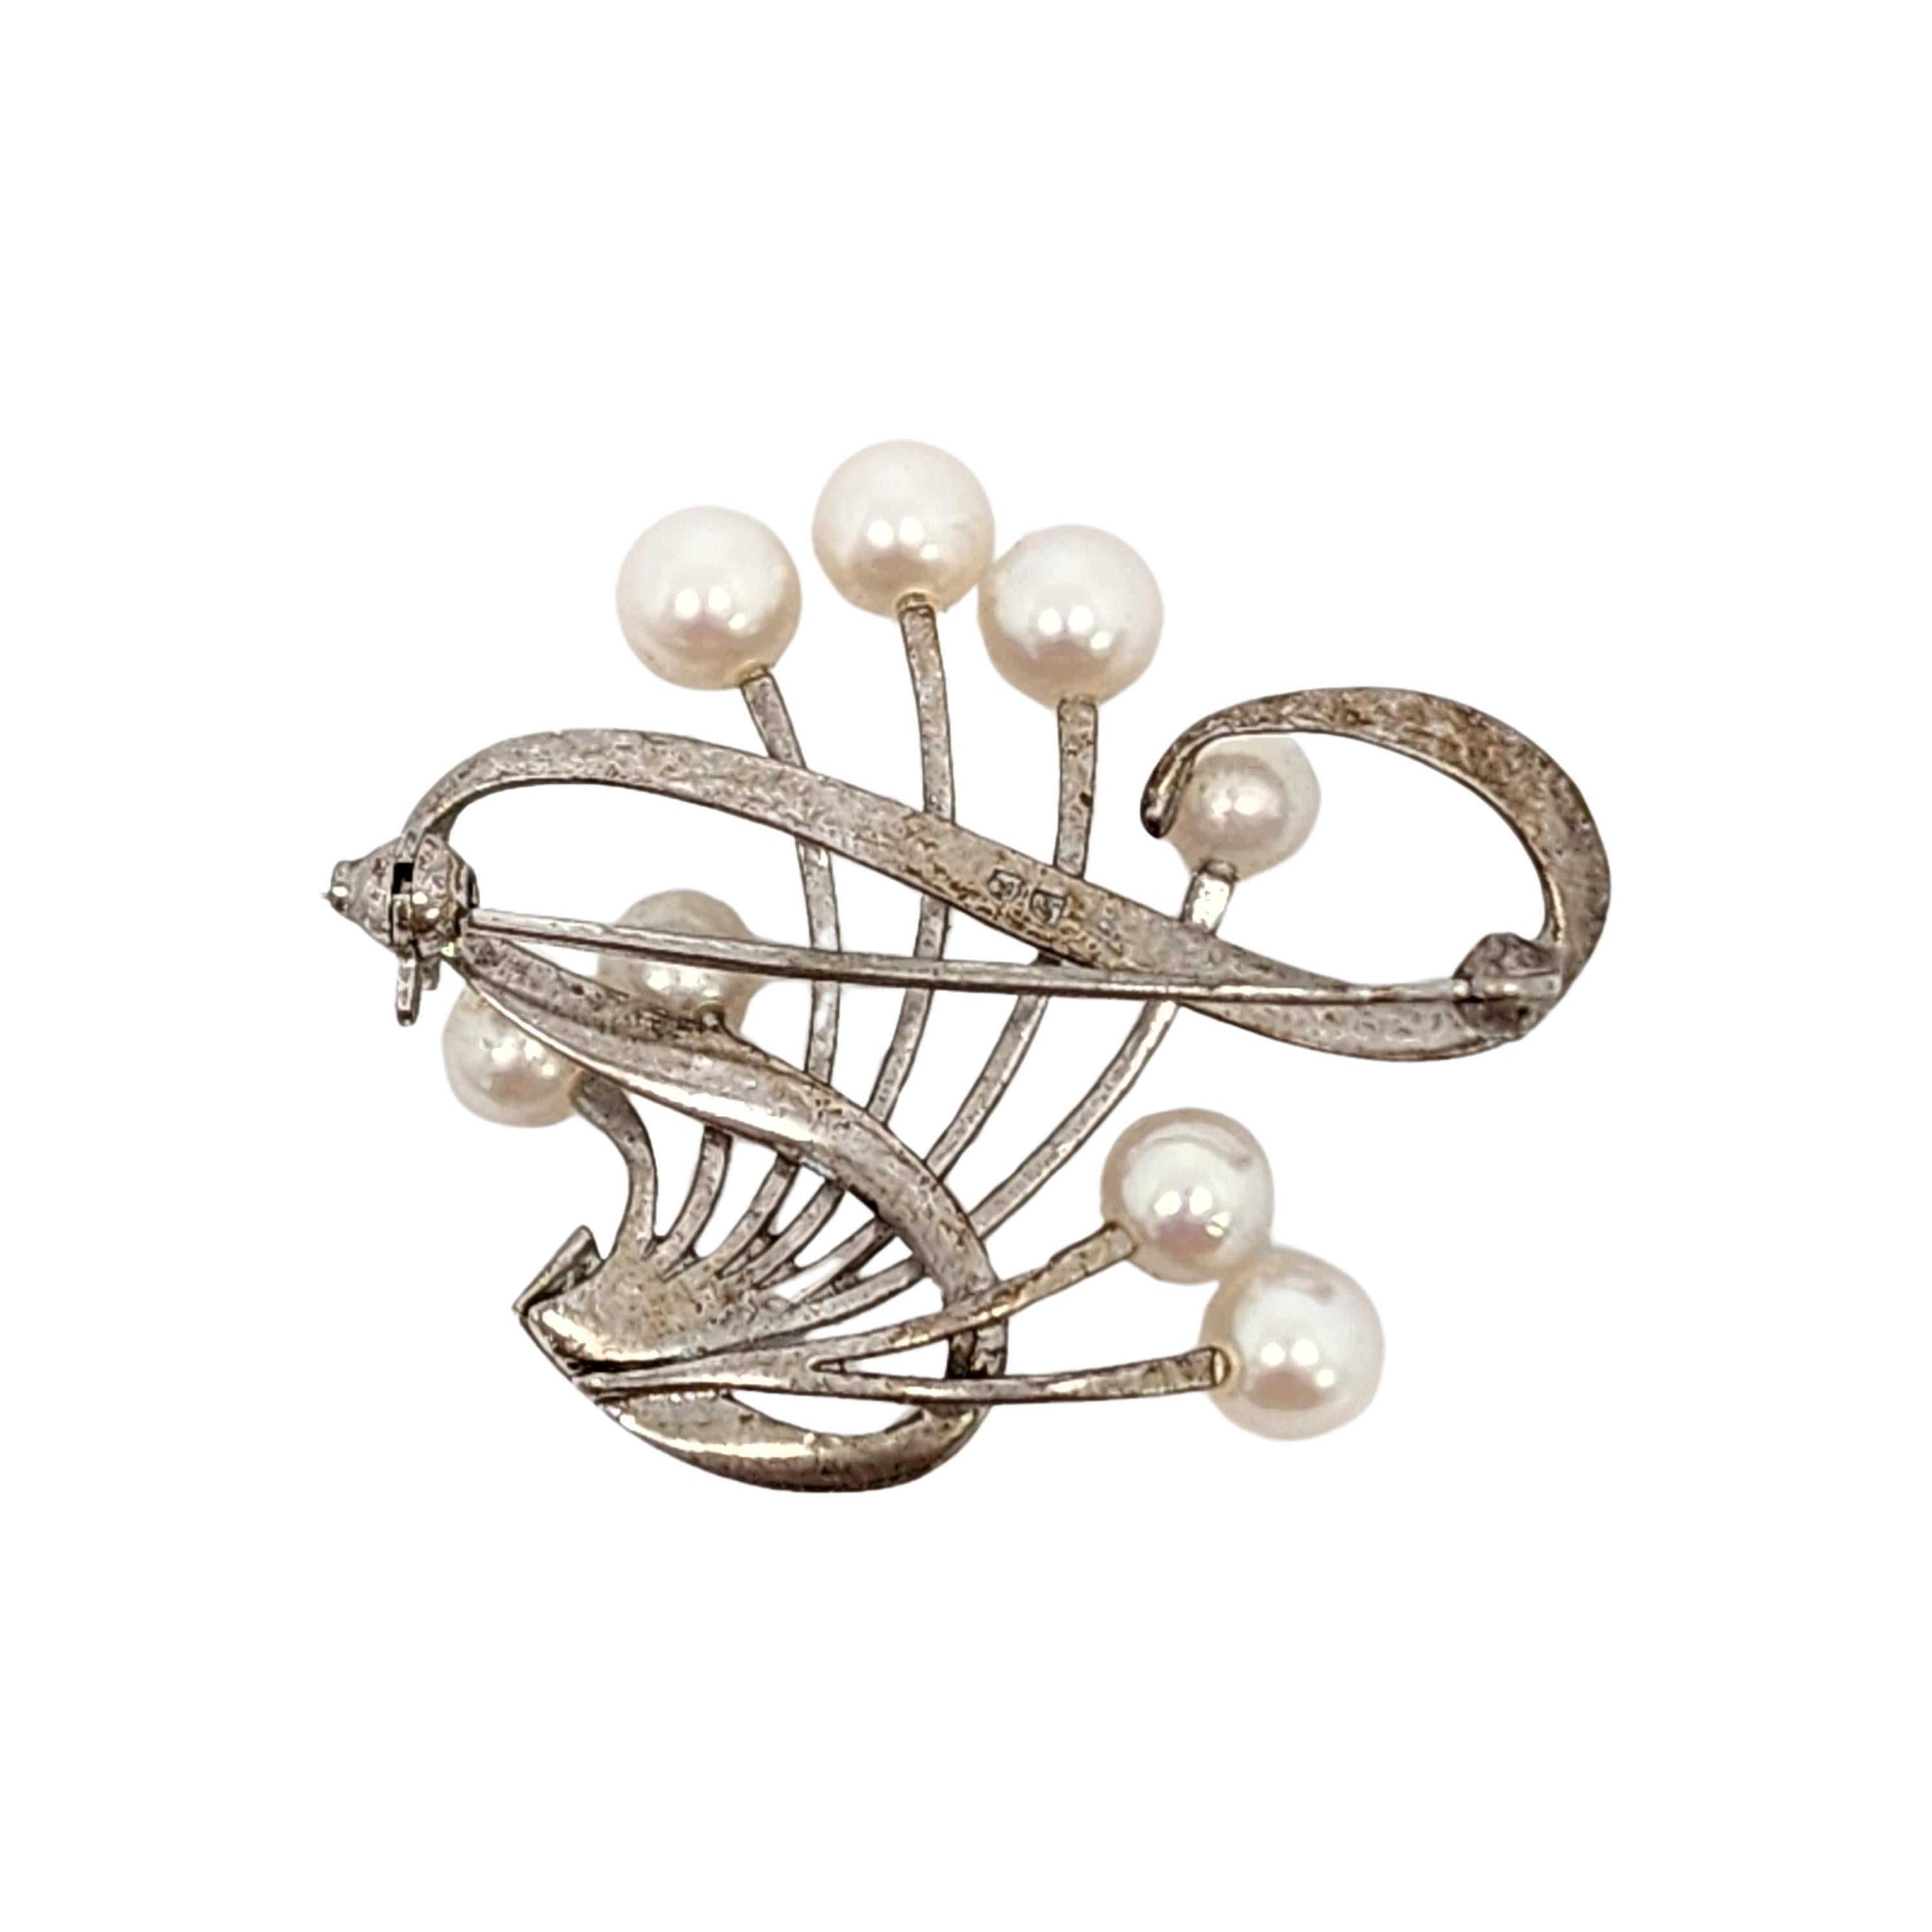 Akoya-Perlenbrosche aus Sterlingsilber von Mikimoto.

Wunderschönes Design mit 8 Perlen und einem verschnörkelten Band als Akzent. Kugelschließe und Scharnier.

Maße: ca. 1 1/8